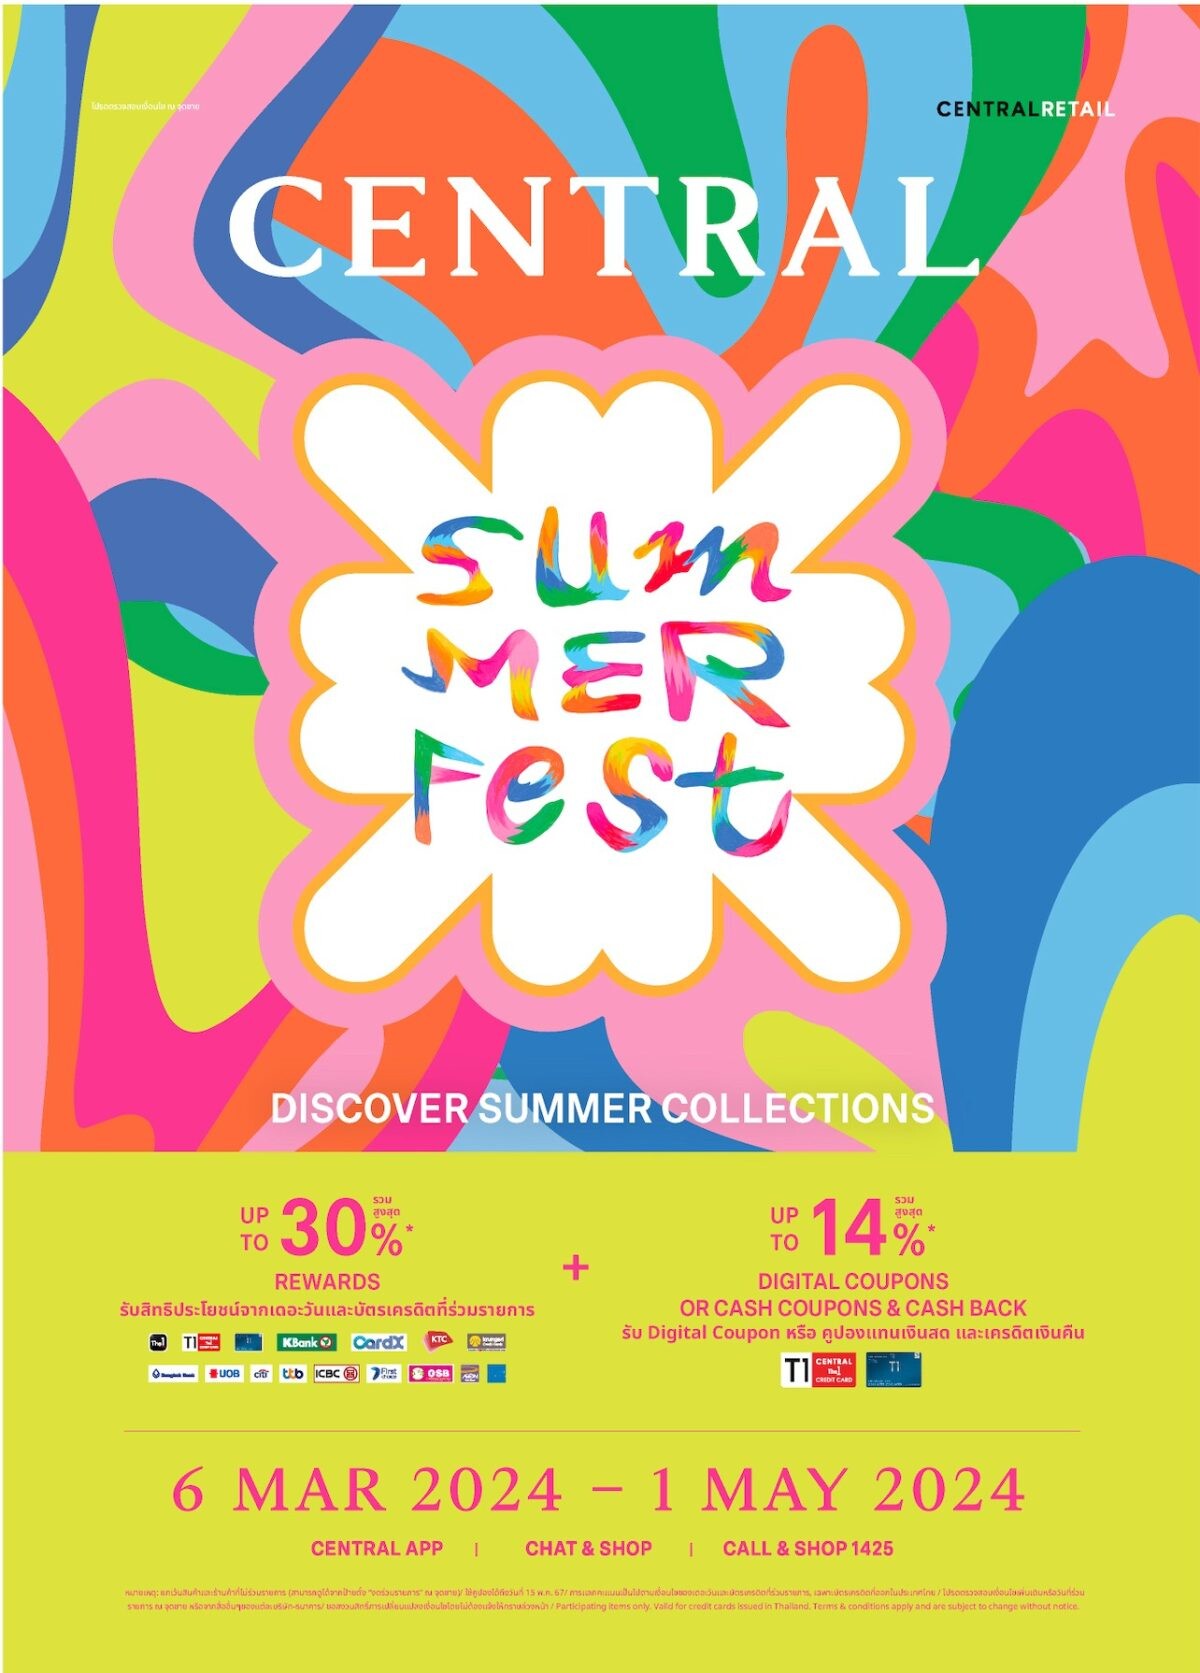 "ห้างเซ็นทรัล" รีเทลเลอร์เบอร์ 1 แห่งแฟชั่นเดสทิเนชั่นของเมืองไทย ประกาศลุยศึกซัมเมอร์ จัด "Central Summer Fest"